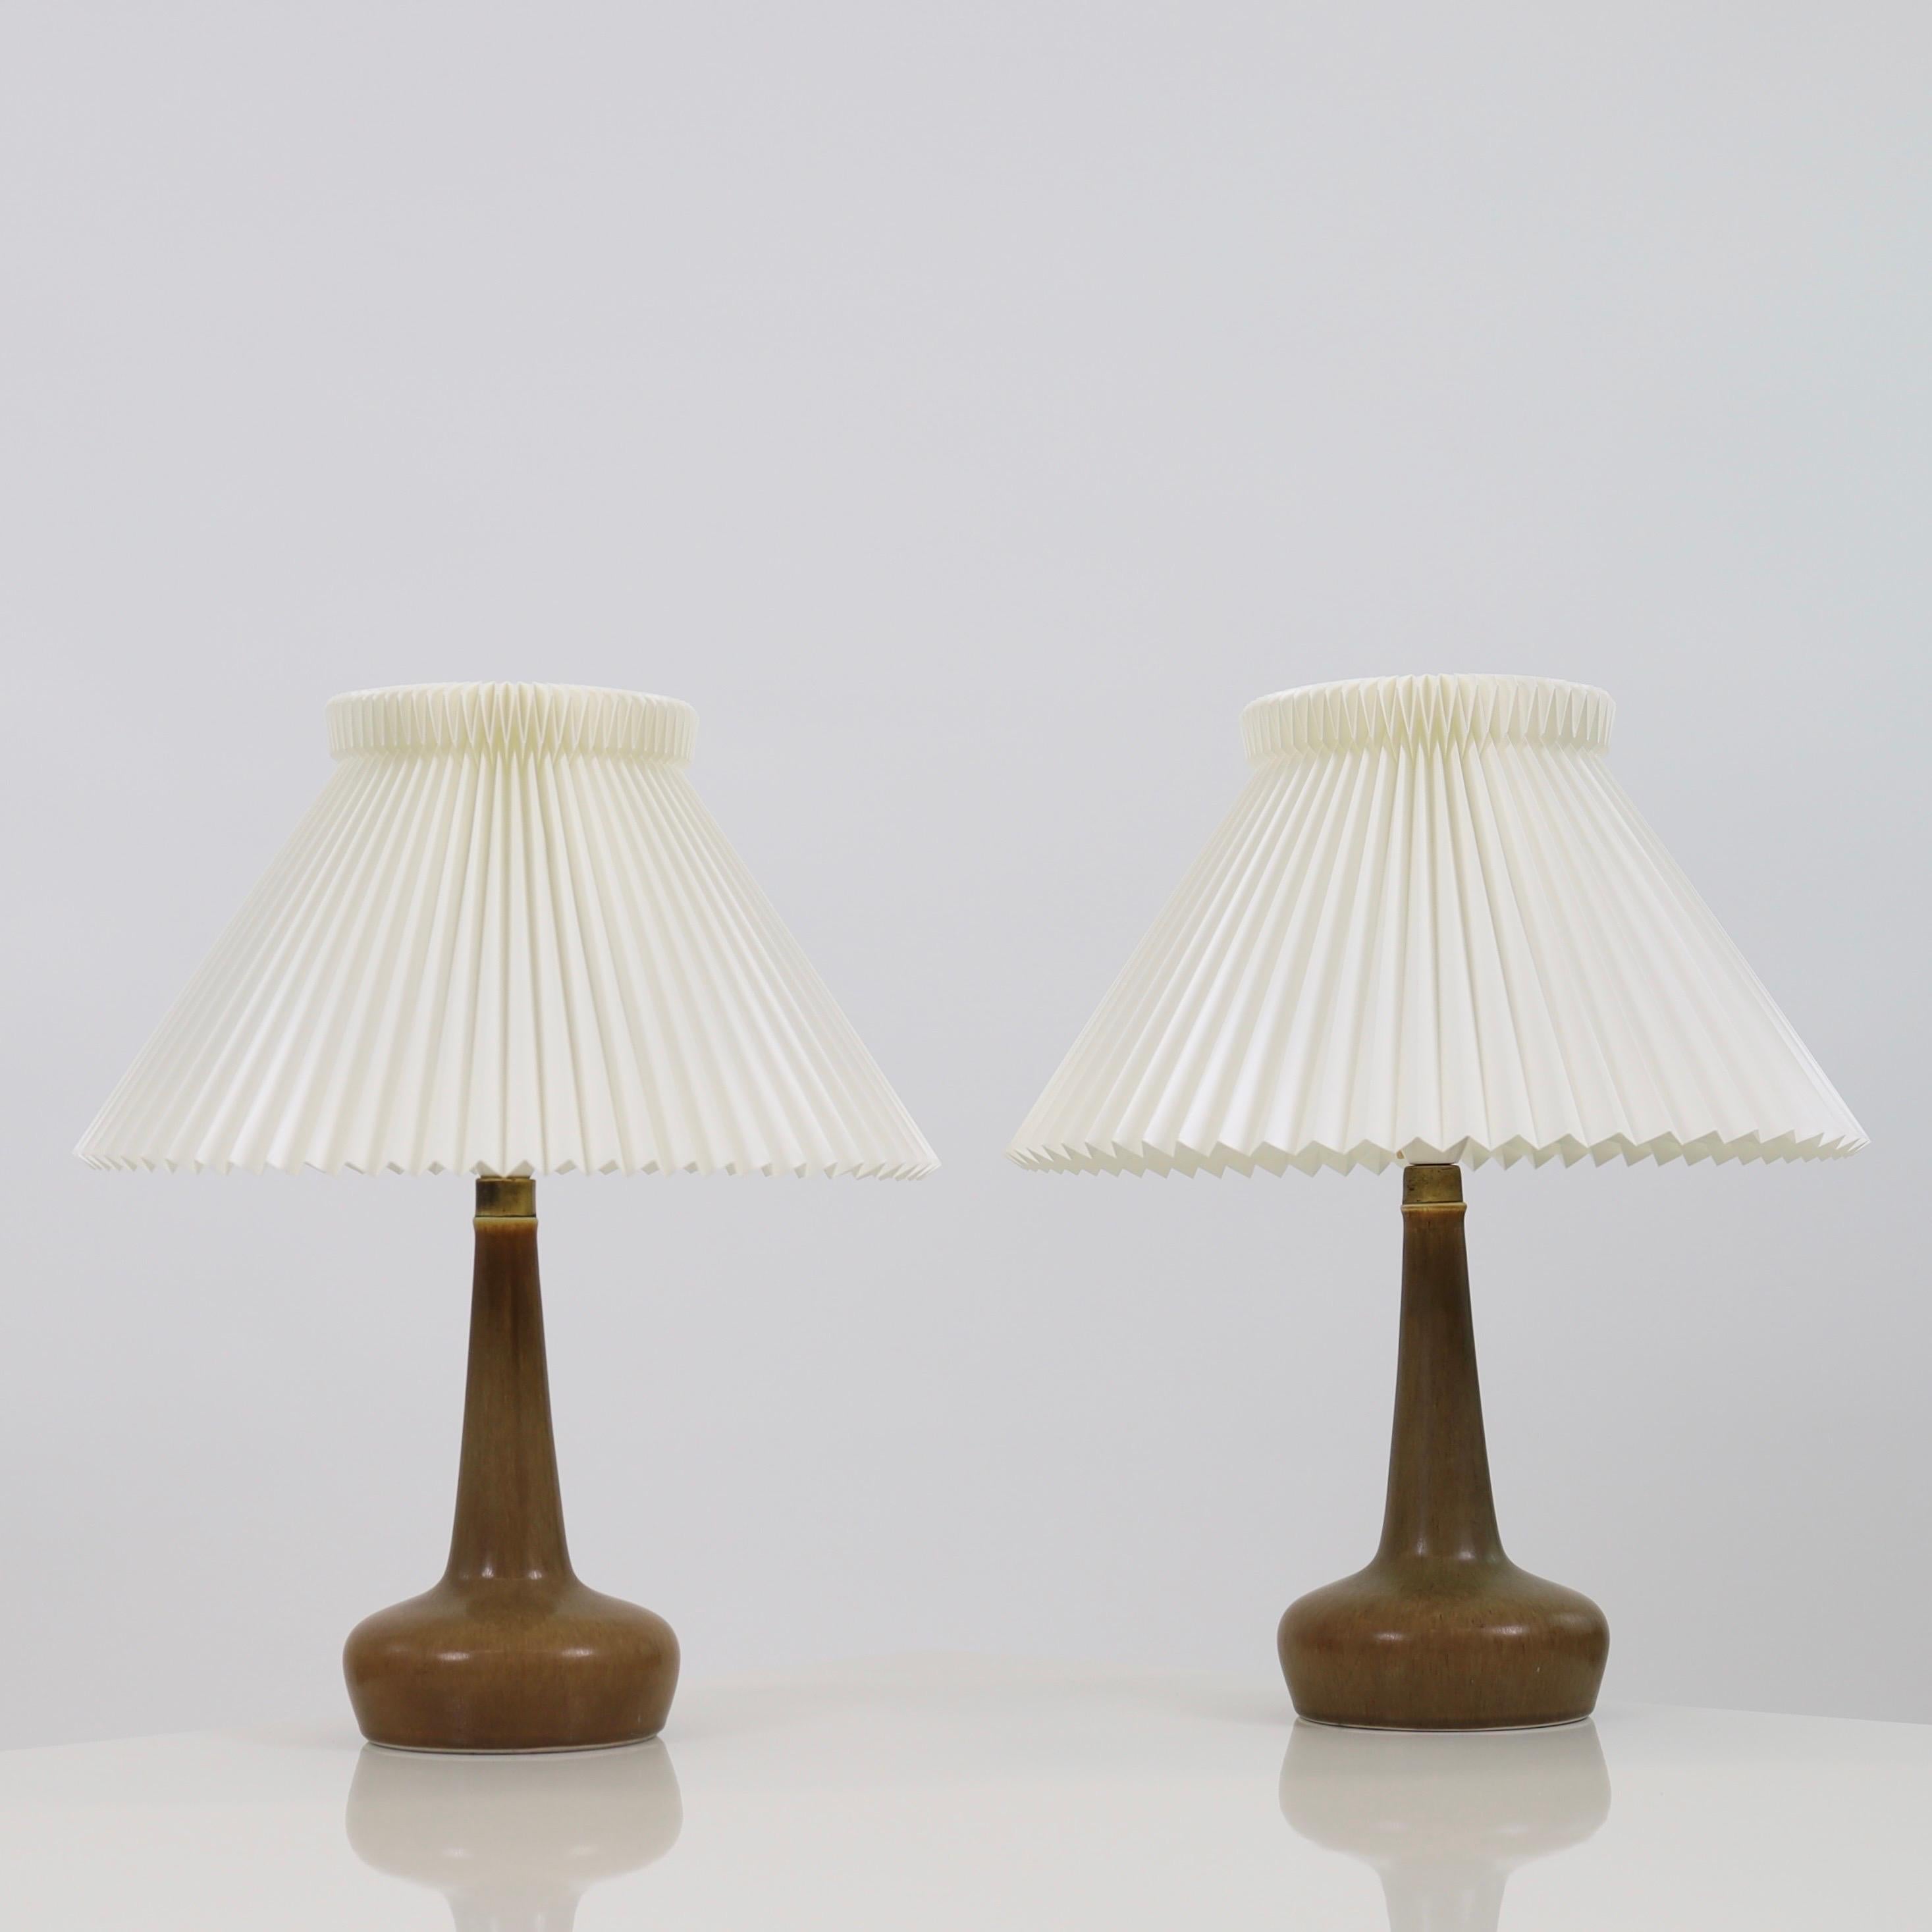 Ein Paar exquisite Keramik-Schreibtischlampen, entworfen von Esben Klint für Le Klint im Jahr 1949 und hergestellt von Palshus in den 1950er Jahren.

* Ein Satz von zwei (2) braunen Keramik-Schreibtischlampen mit handgefalteten Schirmen
* Designer: